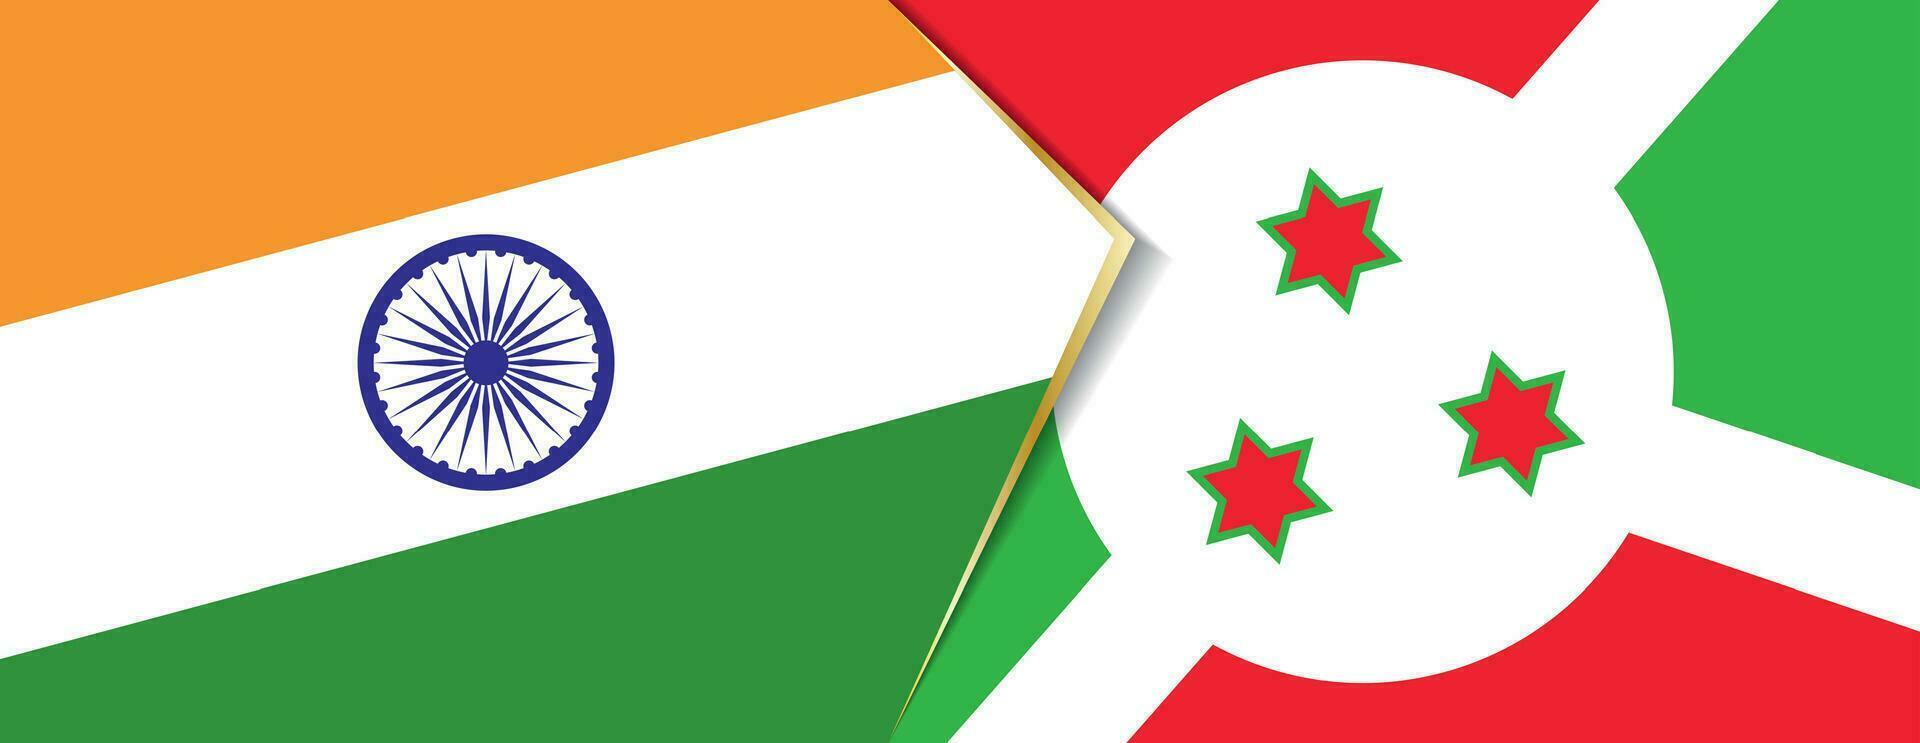 India e burundi bandiere, Due vettore bandiere.